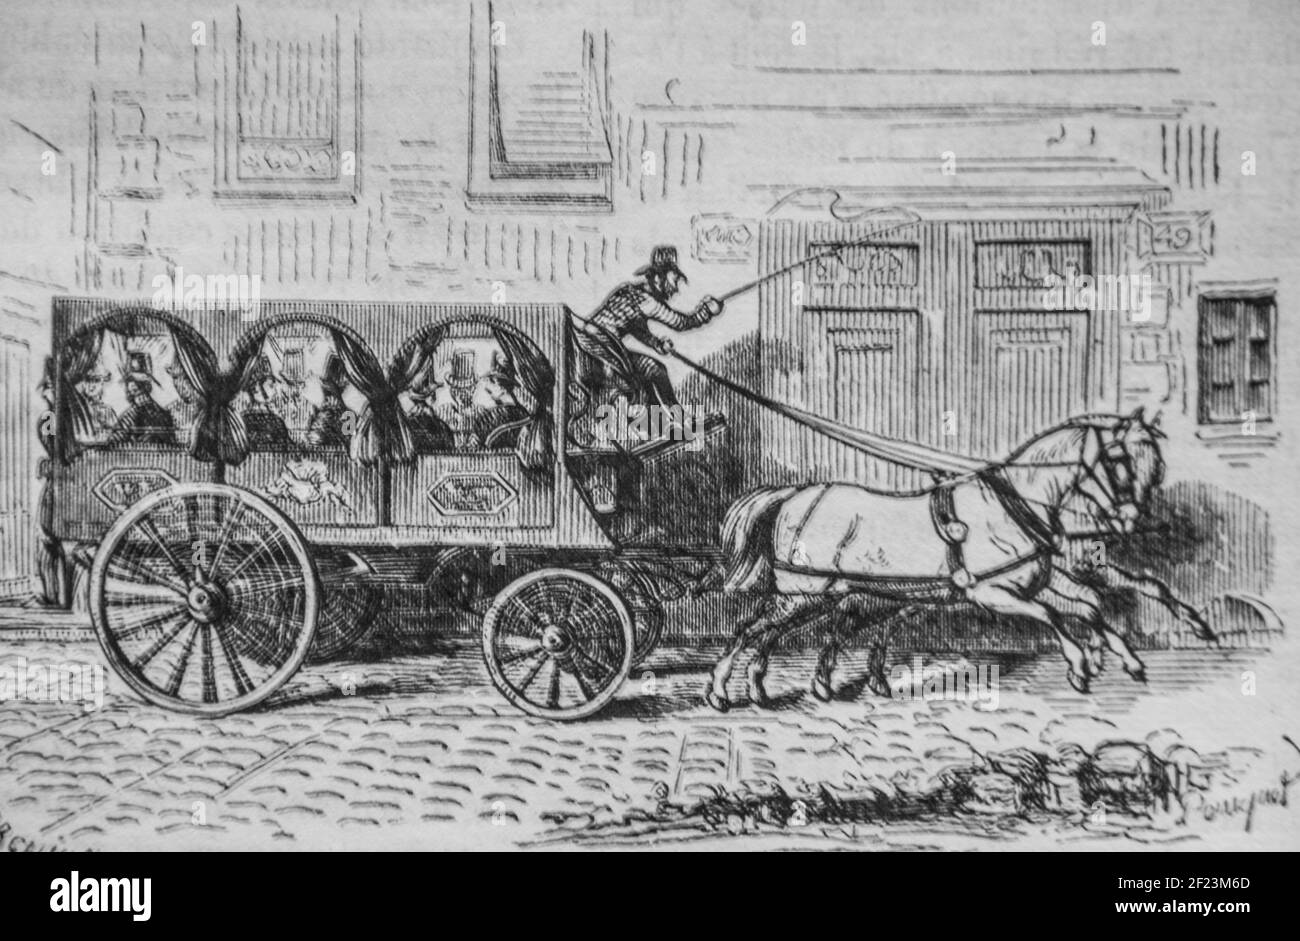 le facteur de la poste aux lettres, les français peints par eux-memes,eitor n.j. philippart 1861 Stockfoto